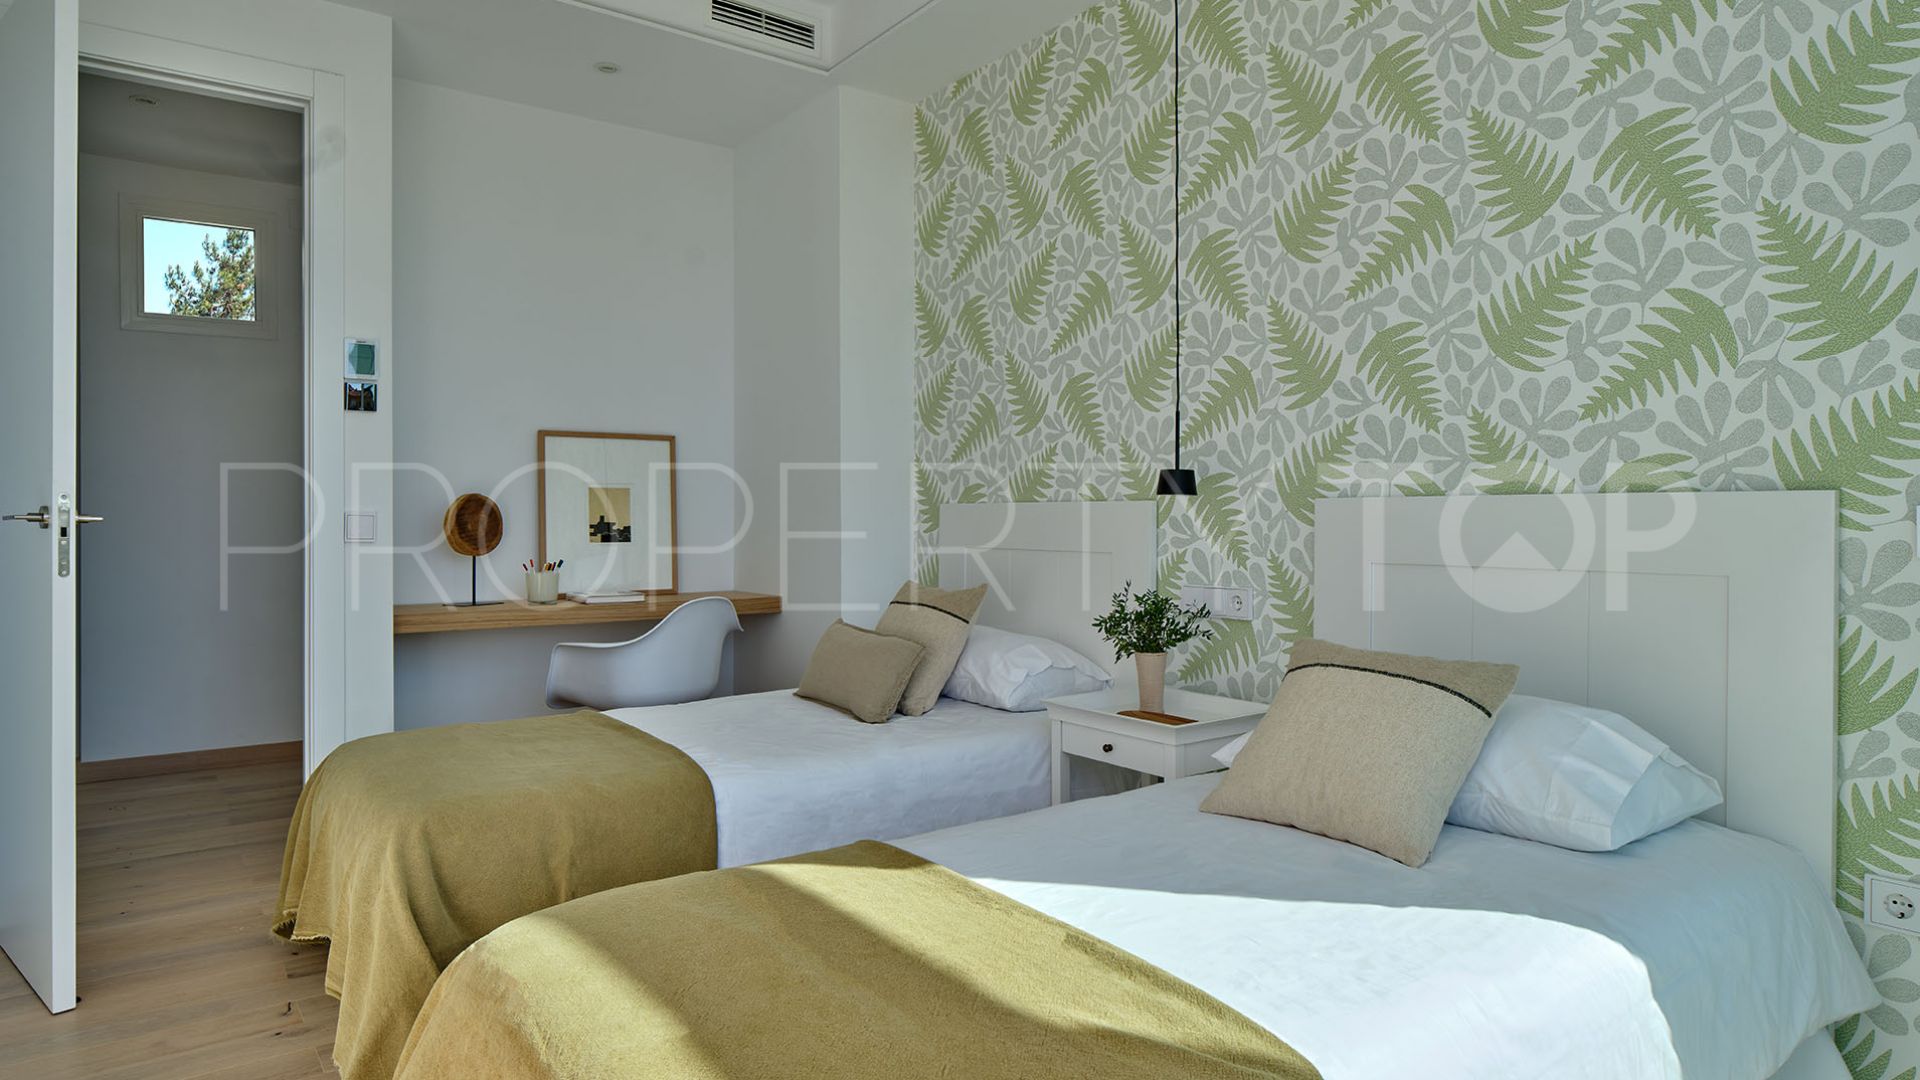 3 bedrooms villa in Valdeolletas for sale